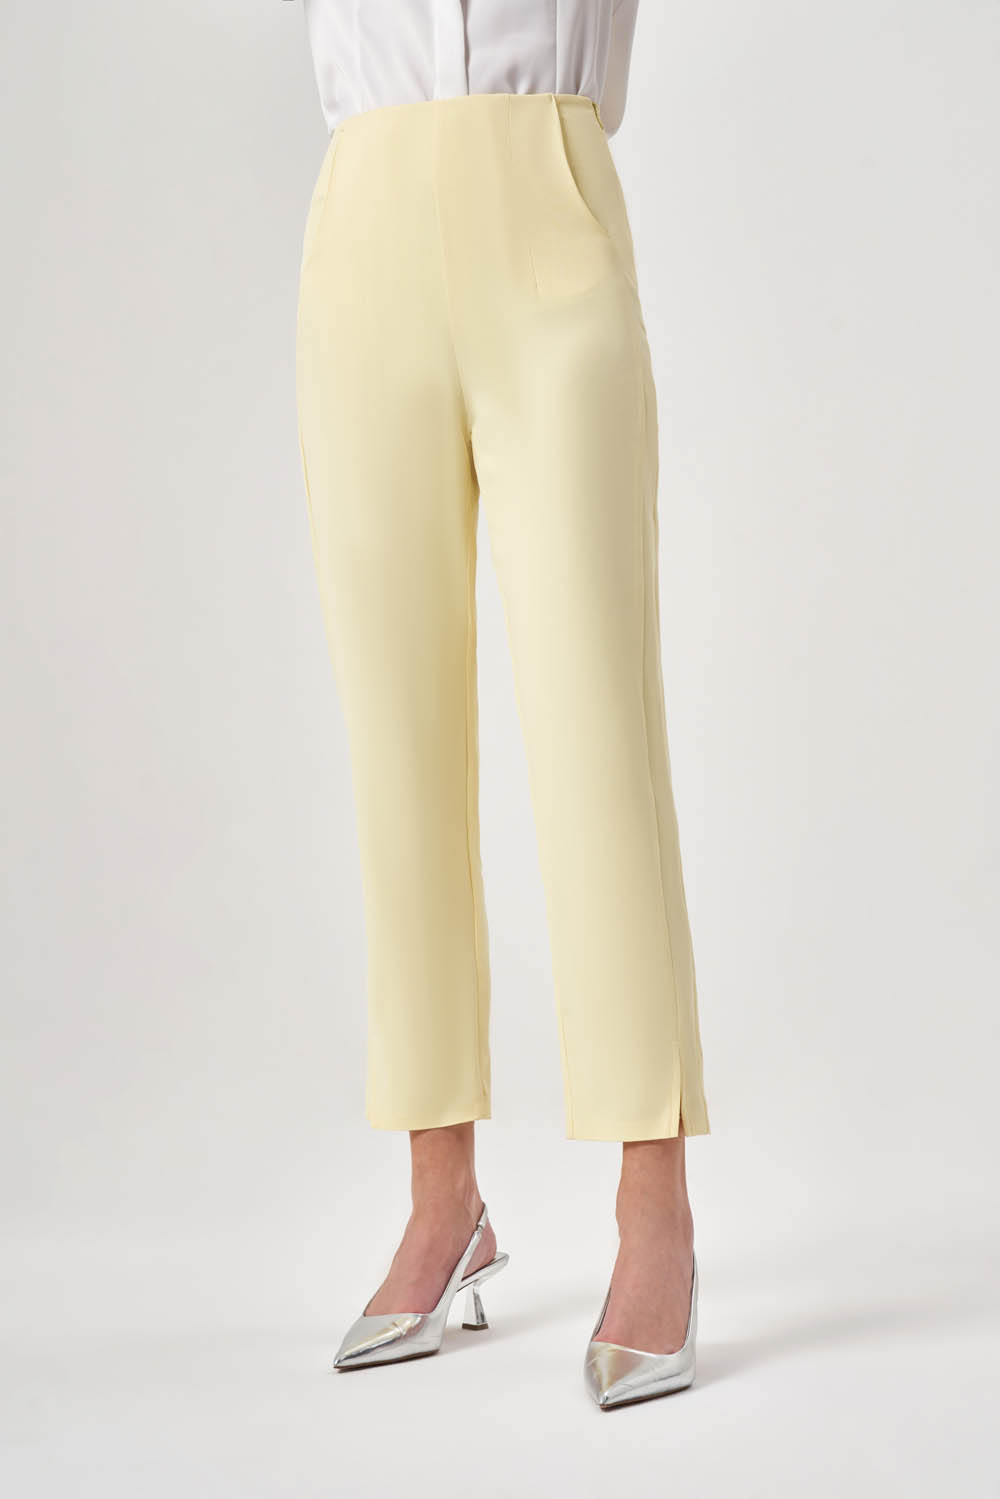 Pensli Basic Sarı Pantolon